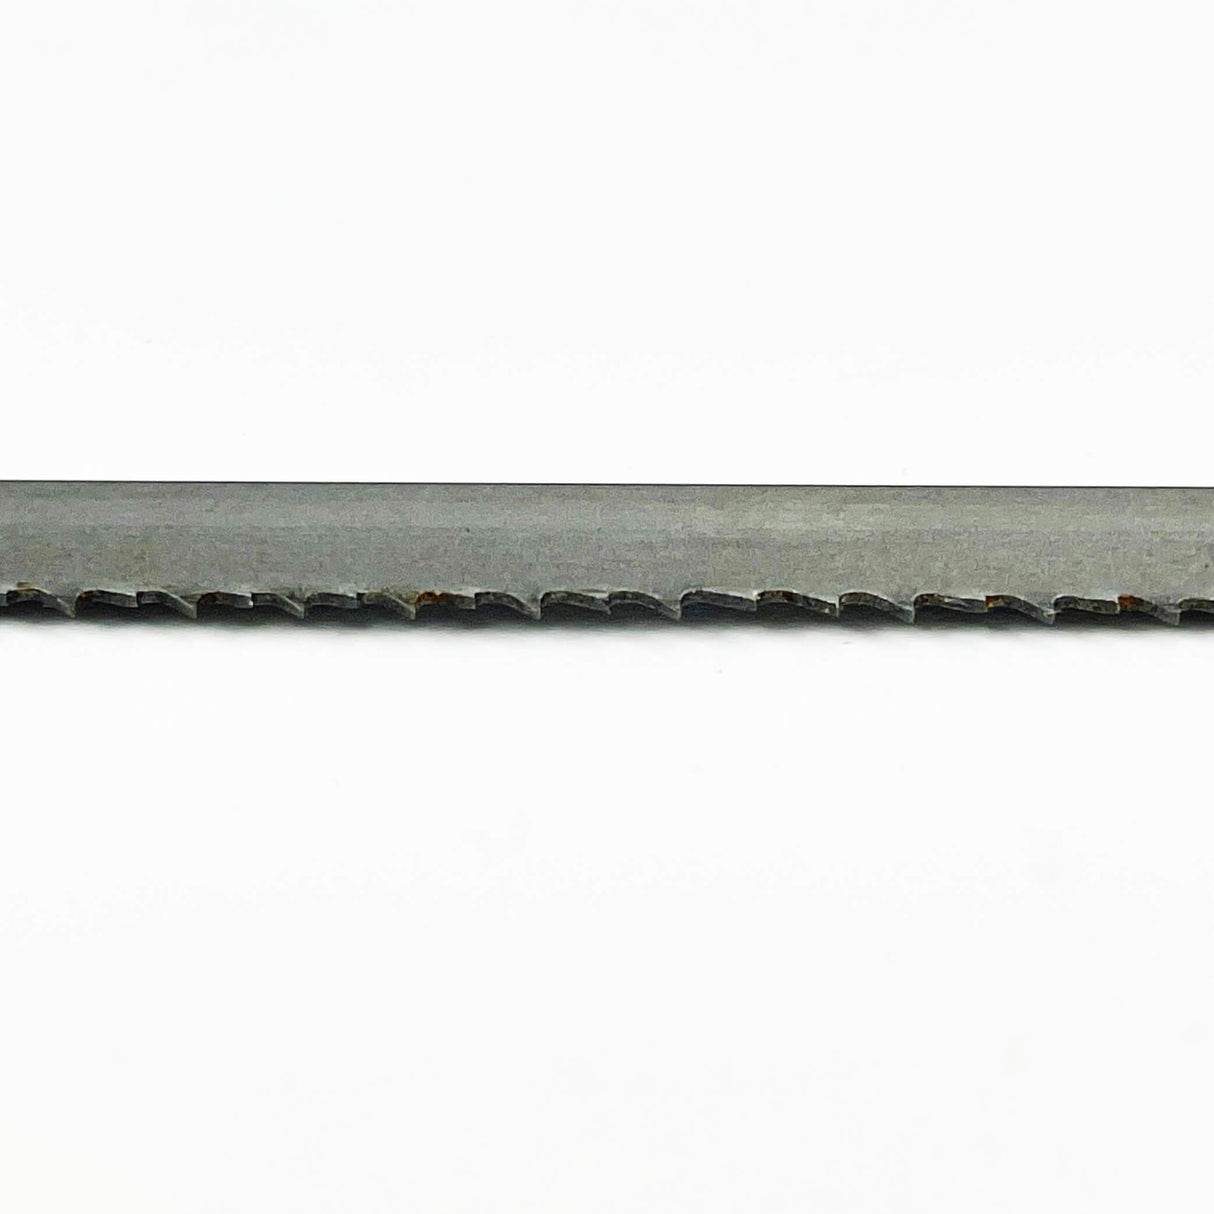 Sega a nastro bimetallica COBALT M42 da 3.660 mm di lunghezza x 13 mm di larghezza – Confezione da 2 lame